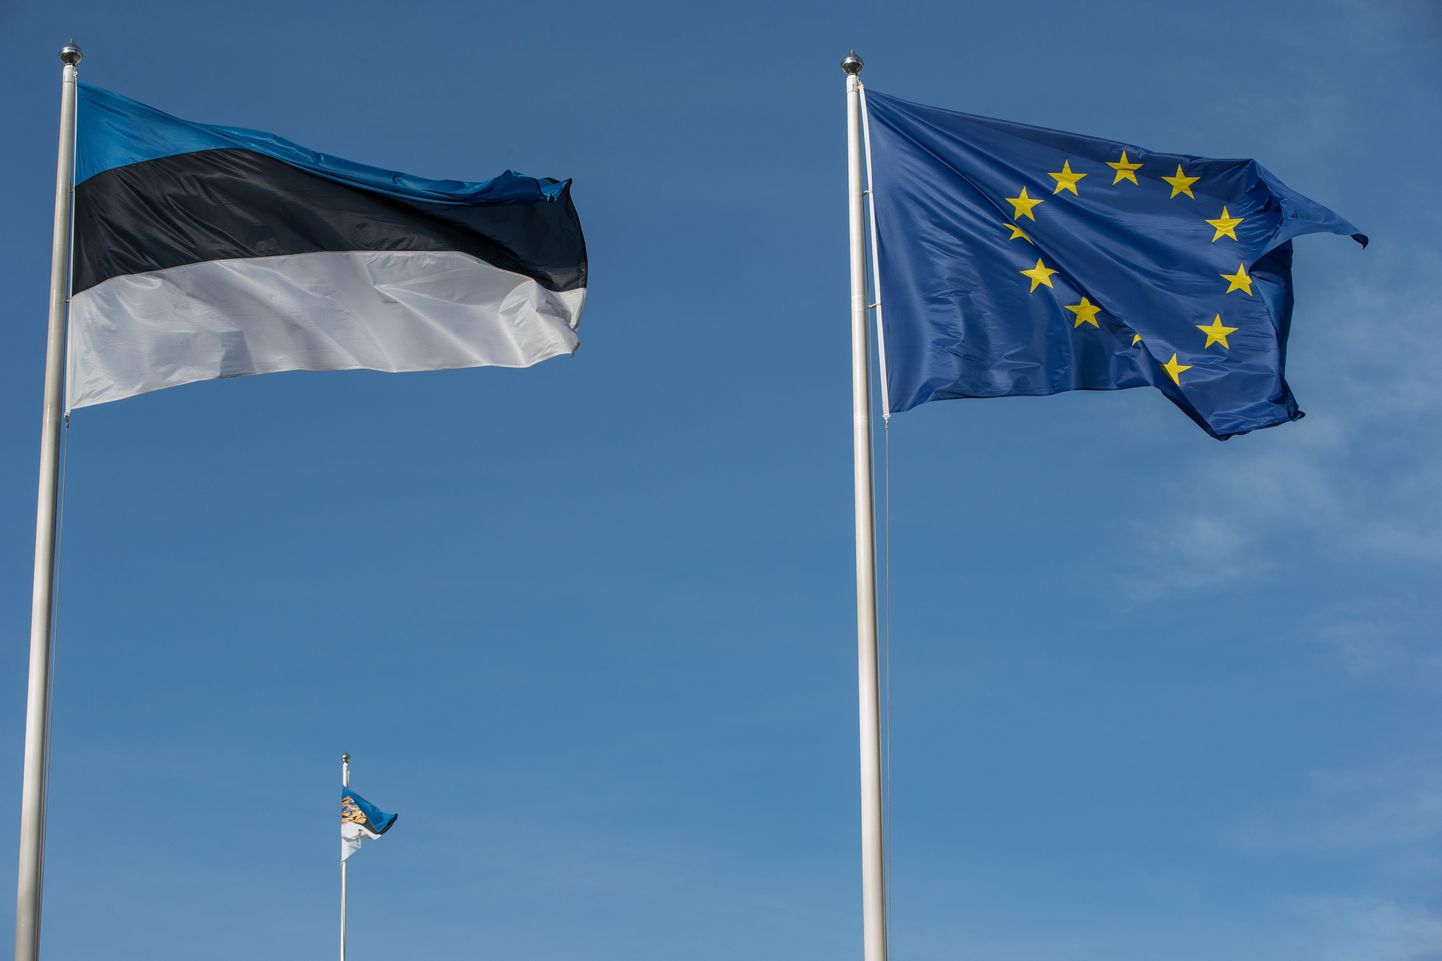 Euroopa Liit, Eesti Vabariik. Lipp, lipud. 12MAR14 Foto: Erik Prozes / Postimees